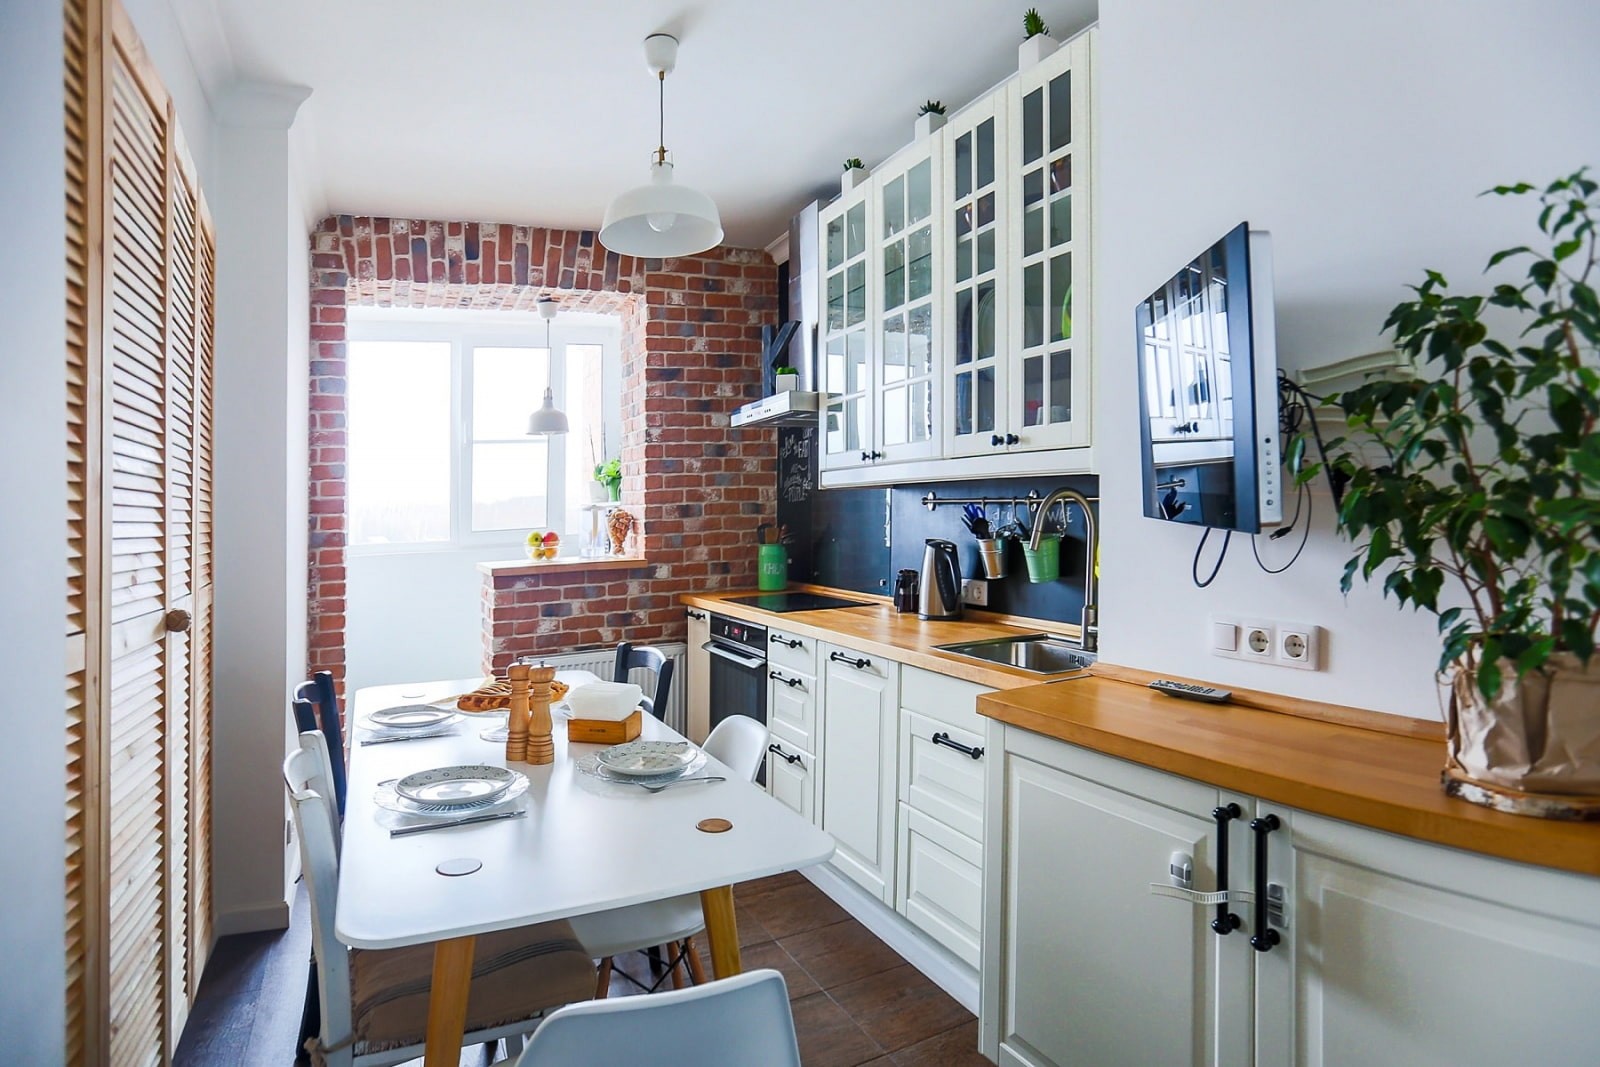 Оформляем интерьер кухни с балконом или лоджией: 30 дельных идей с фото